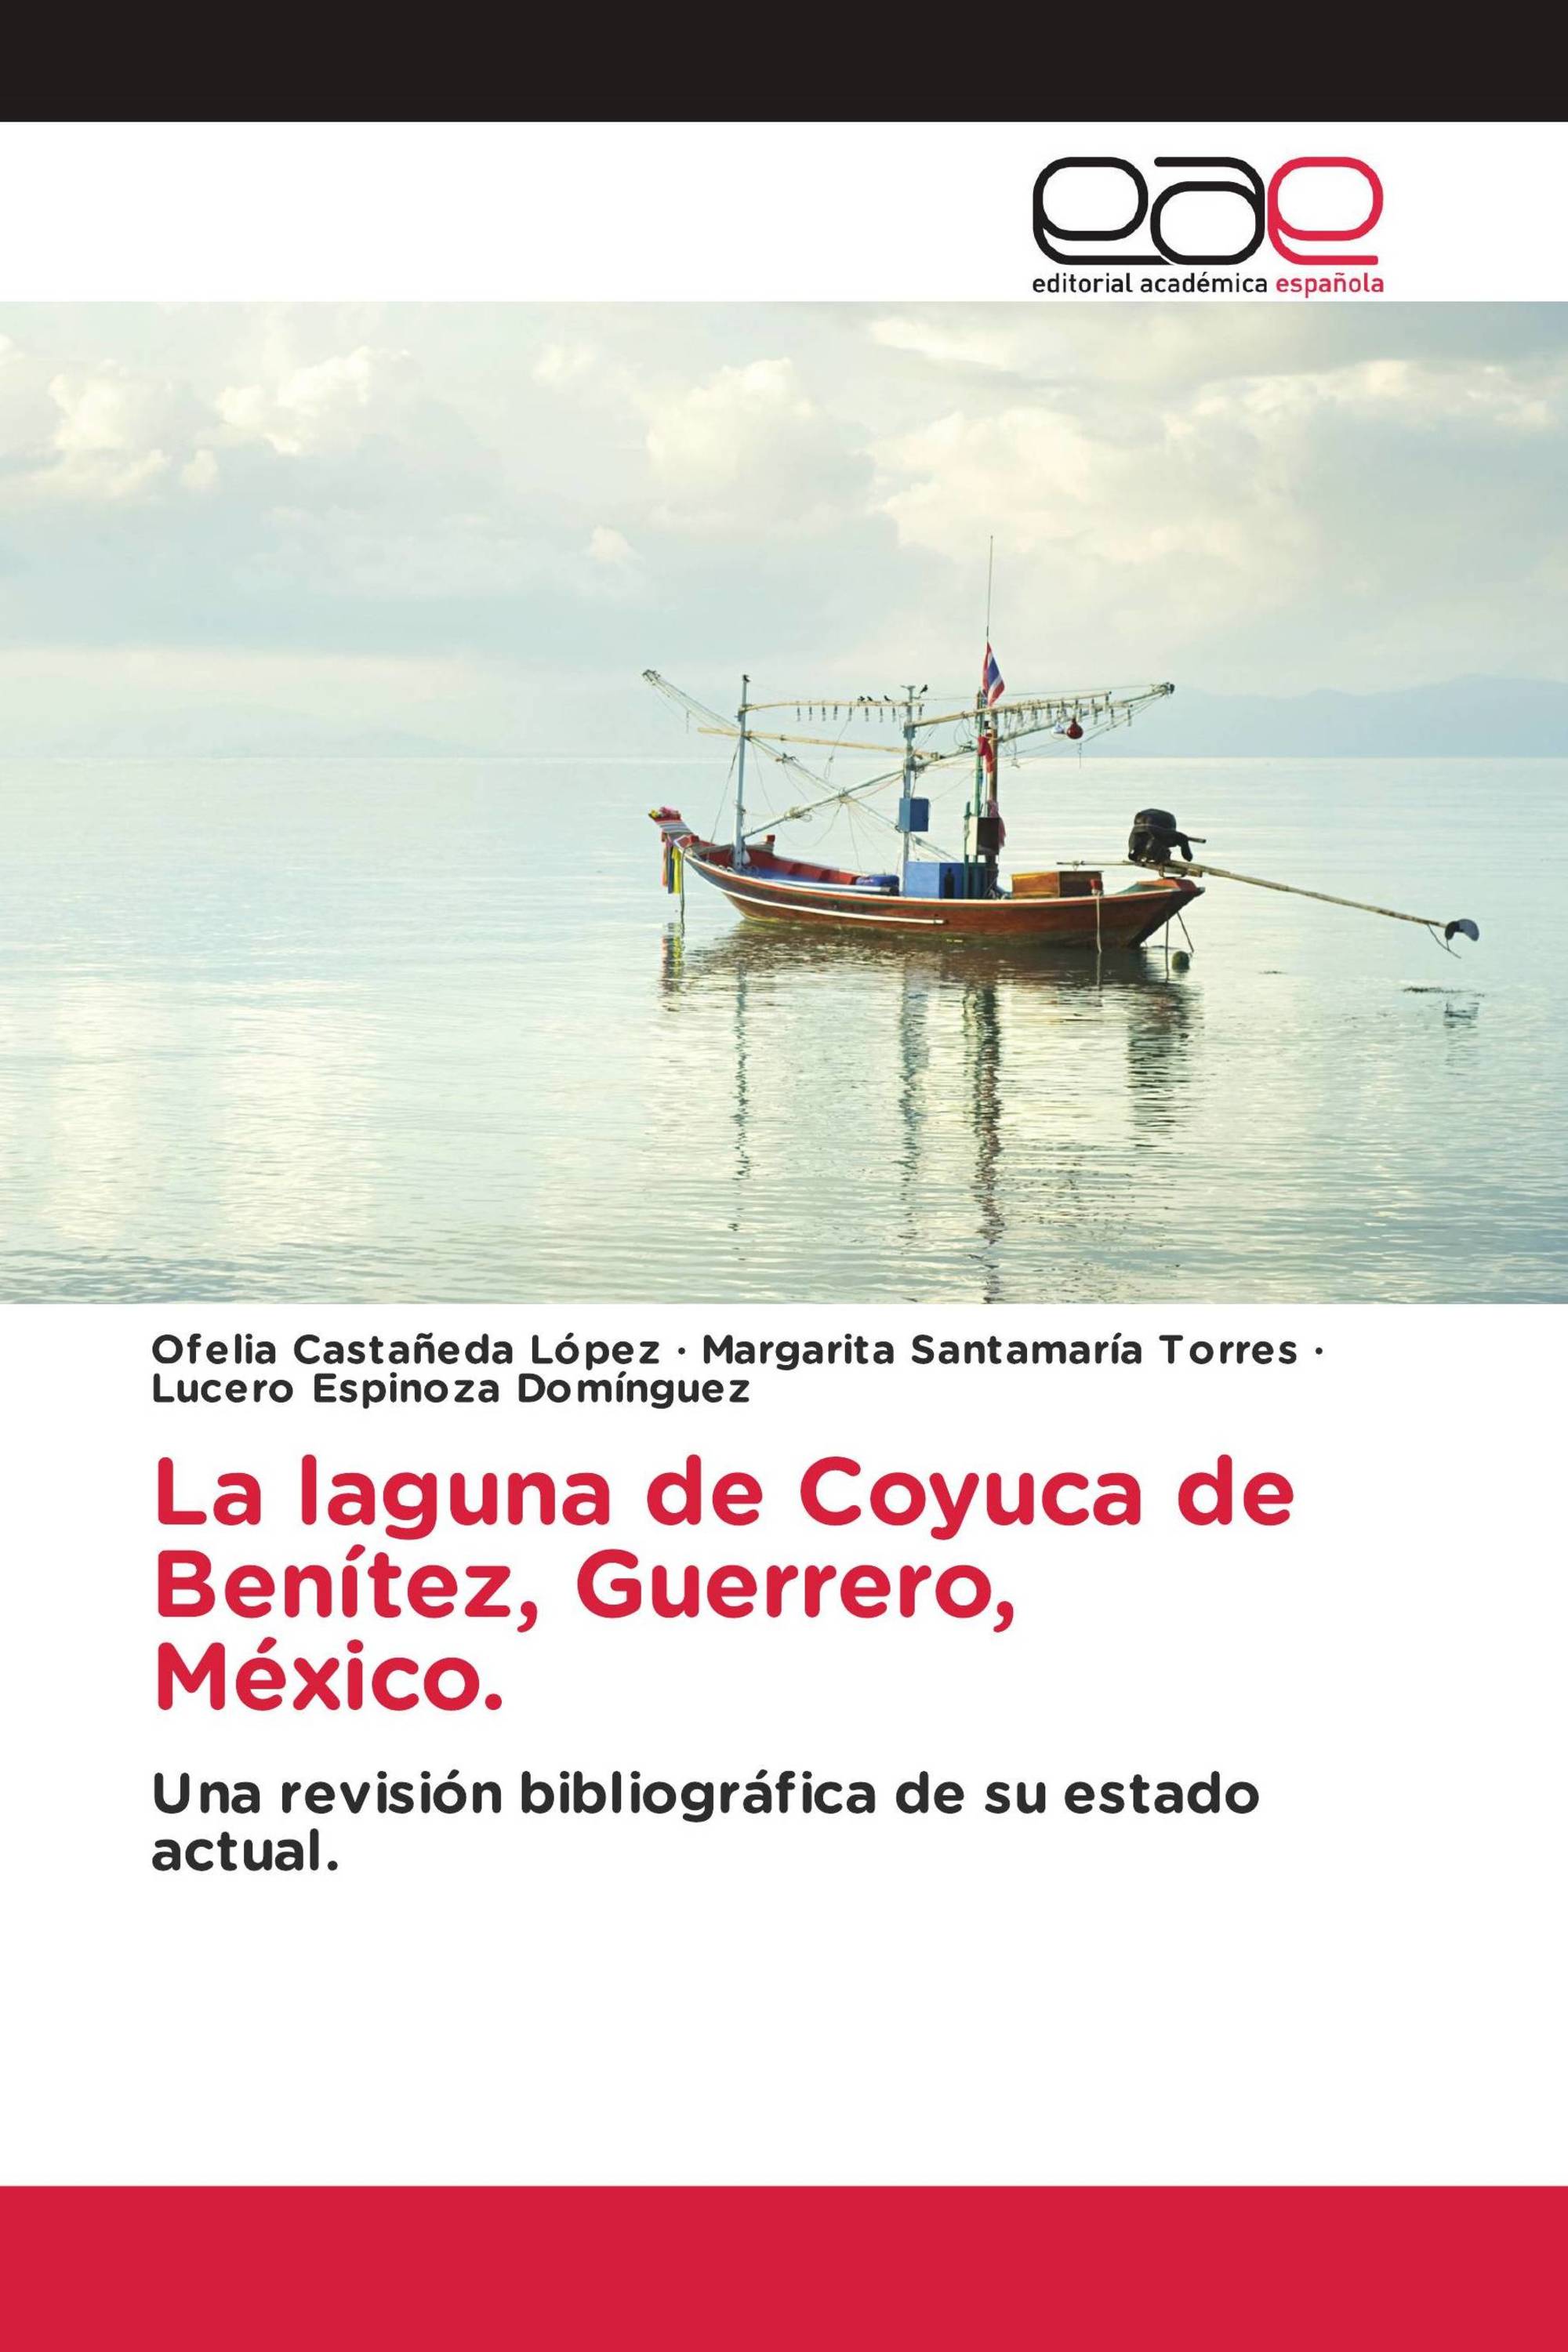 La laguna de Coyuca de Benítez, Guerrero, México.